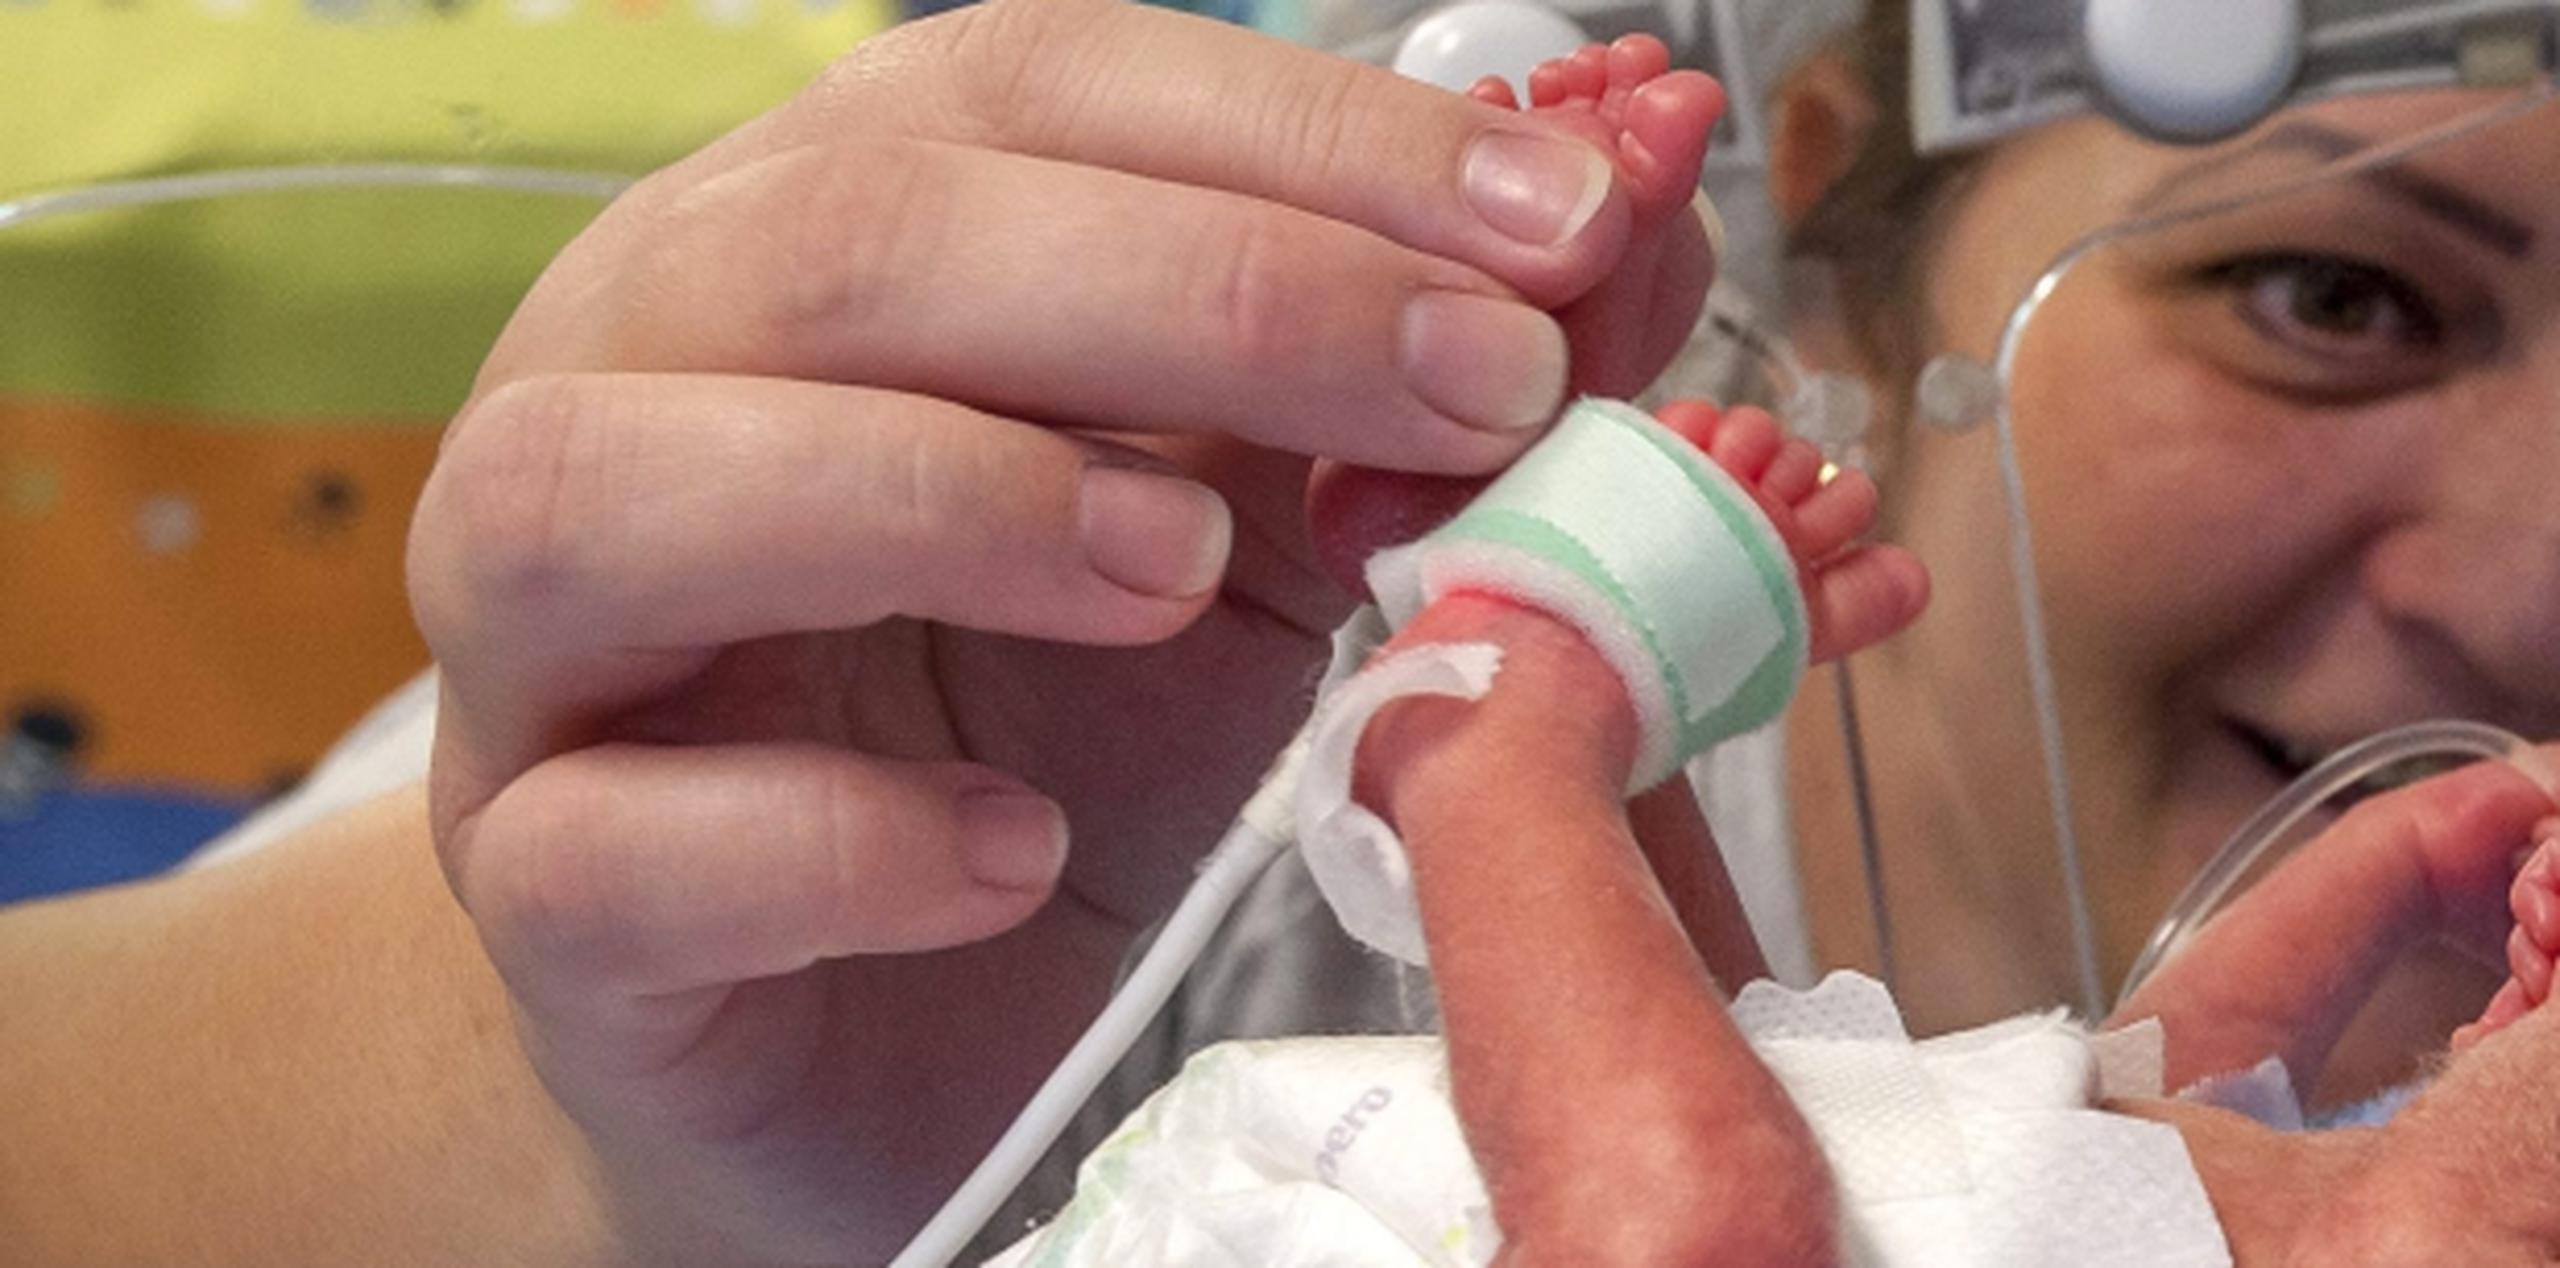 Los niños que nacen prematuros pueden desarrollar complicaciones a largo plazo. (Archivo)